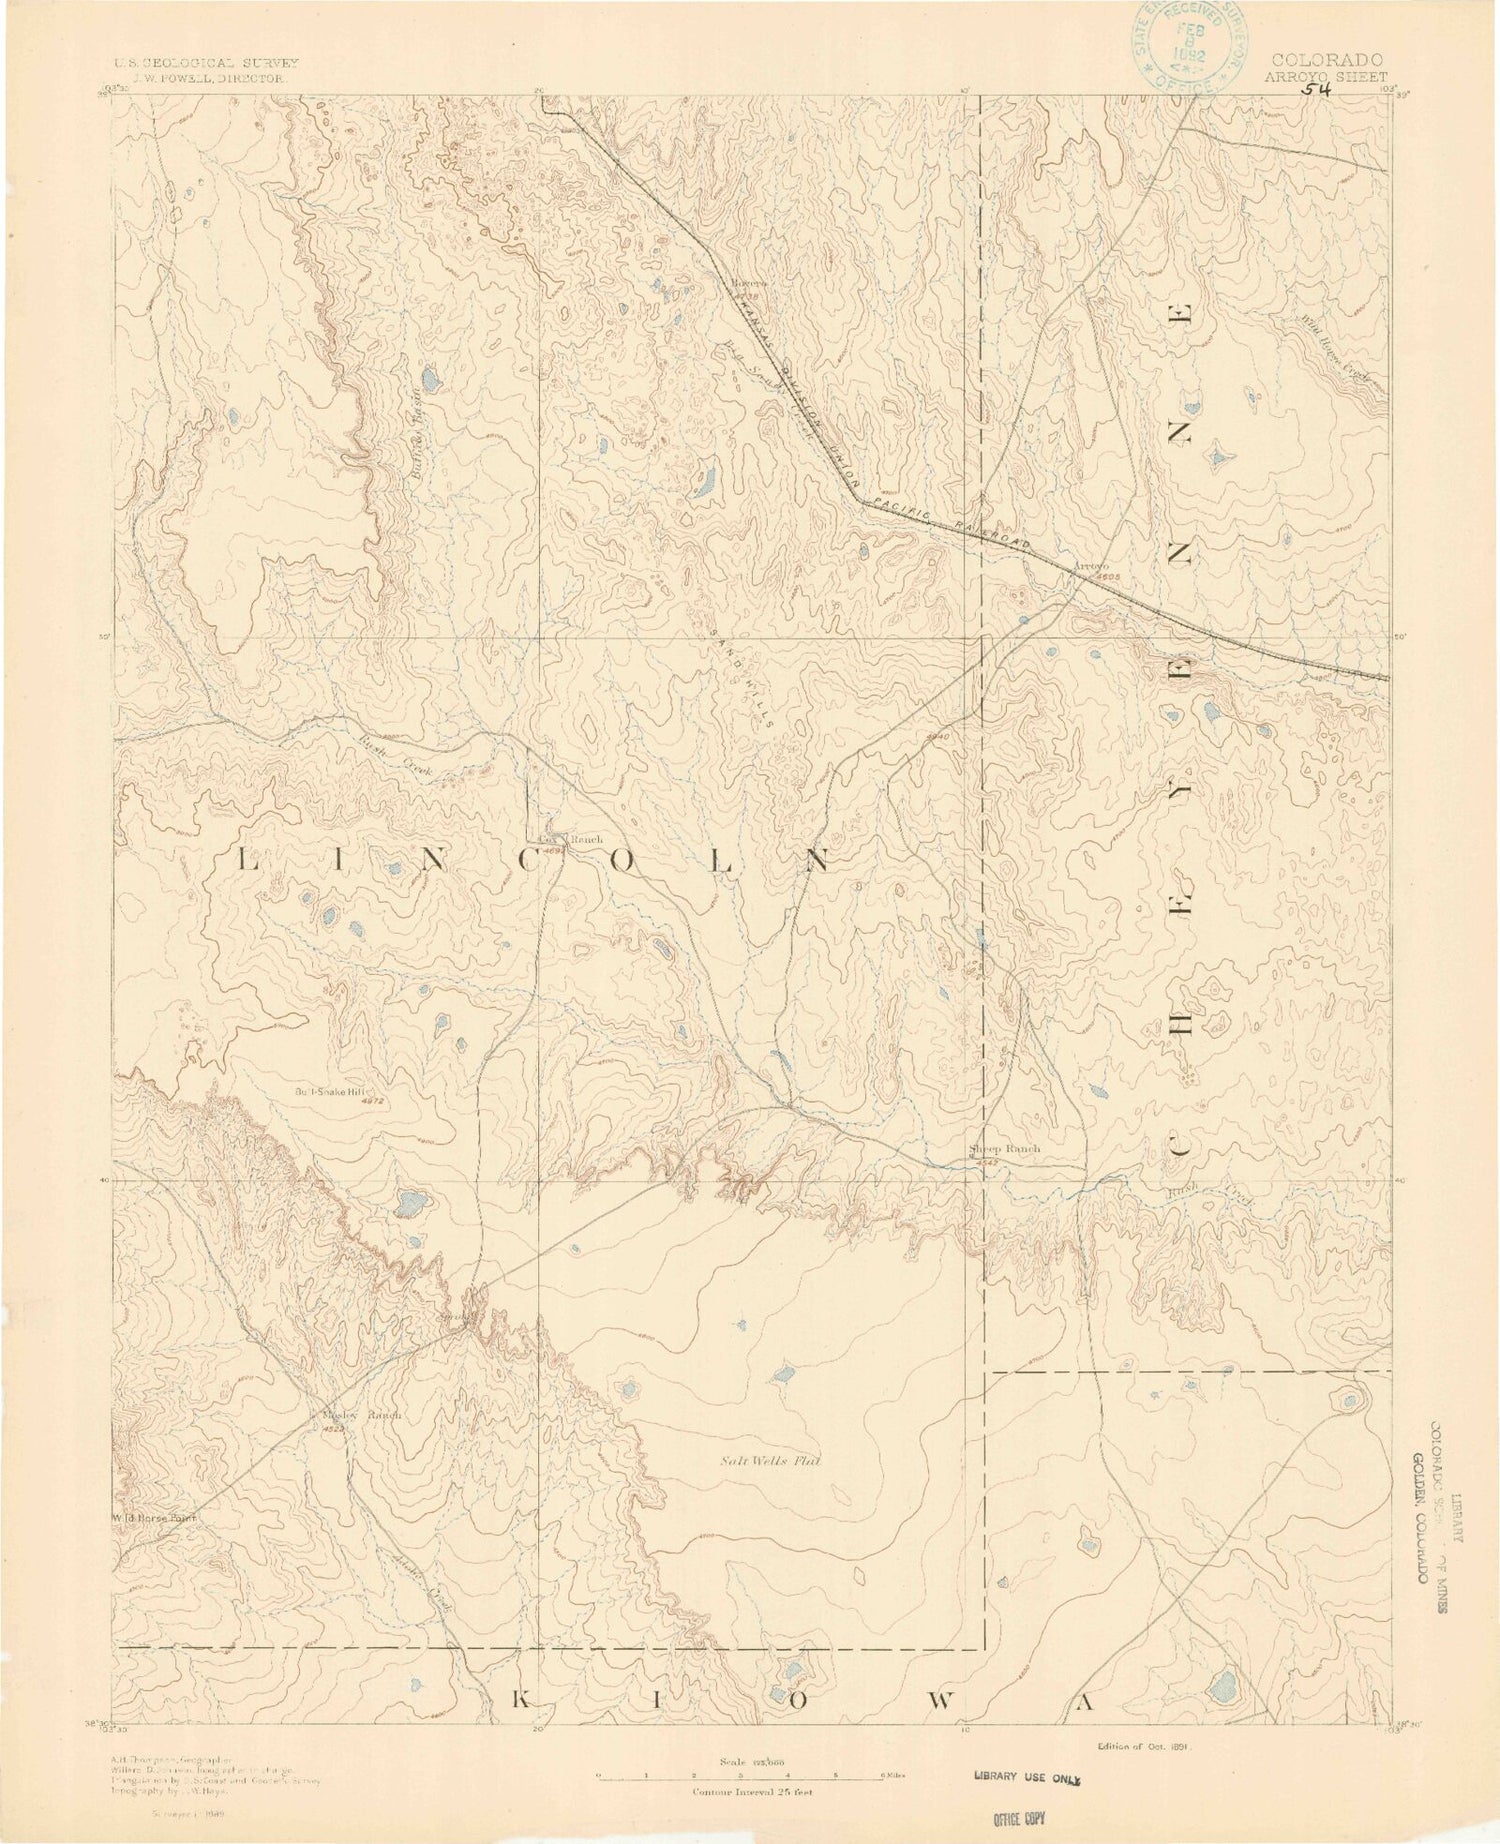 Historic 1891 Arroyo Colorado 30'x30' Topo Map Image